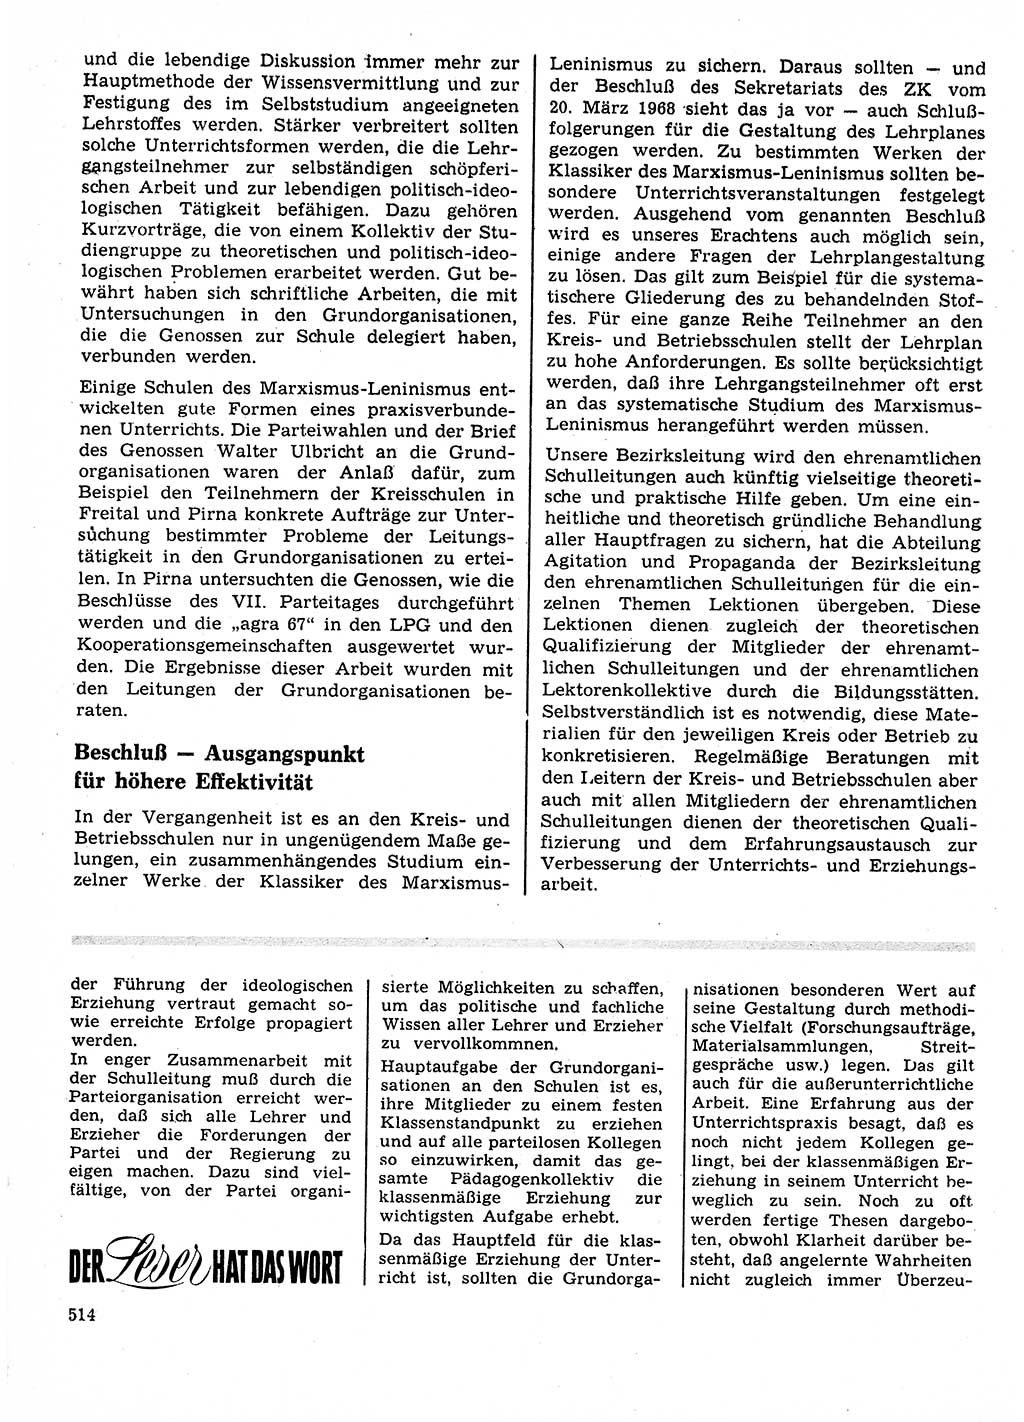 Neuer Weg (NW), Organ des Zentralkomitees (ZK) der SED (Sozialistische Einheitspartei Deutschlands) für Fragen des Parteilebens, 23. Jahrgang [Deutsche Demokratische Republik (DDR)] 1968, Seite 514 (NW ZK SED DDR 1968, S. 514)